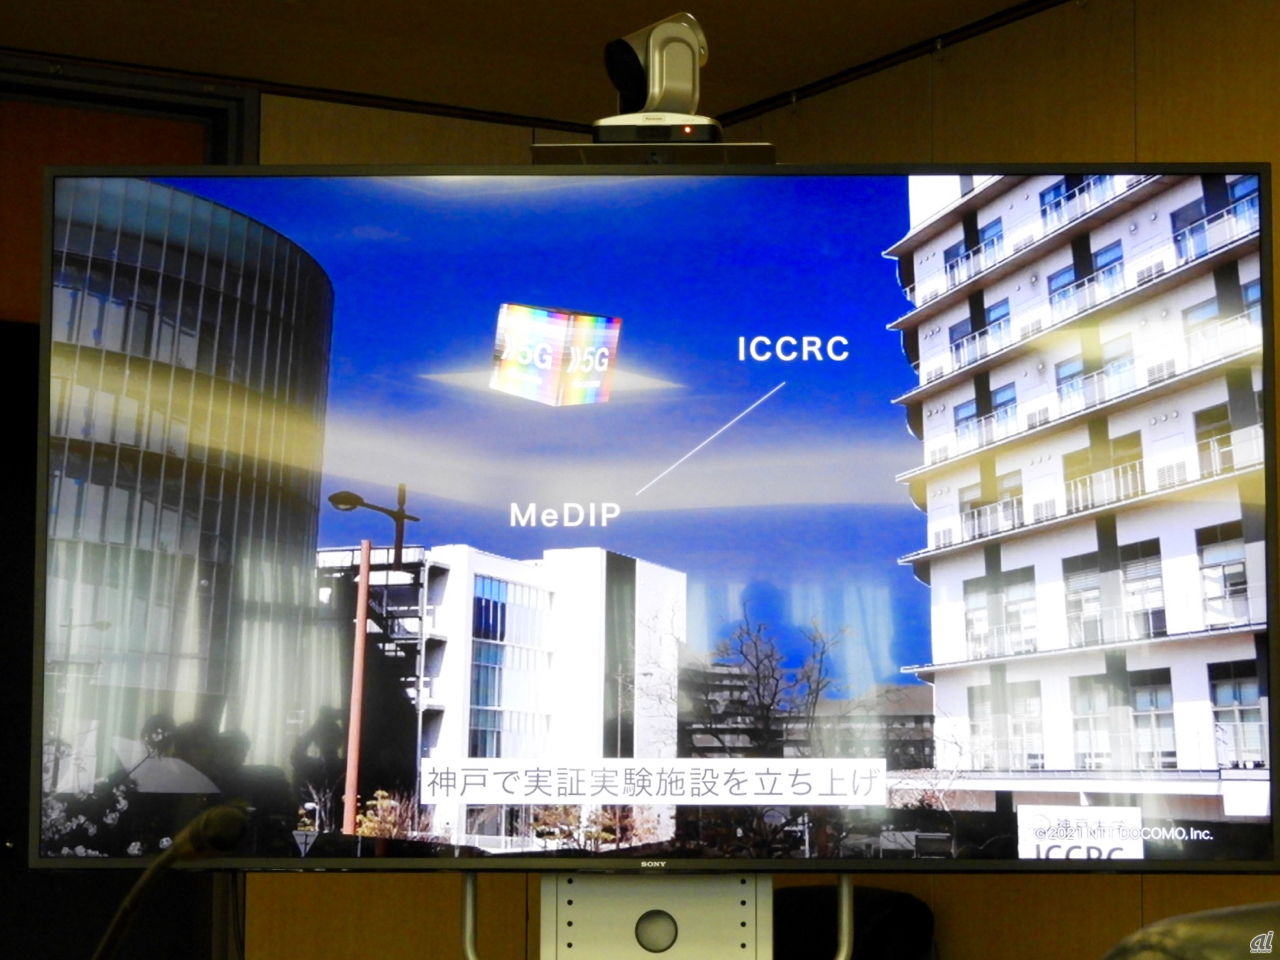 神戸医療都市にあるICCRCとMeDIPの二拠点を結んで実験が行われた